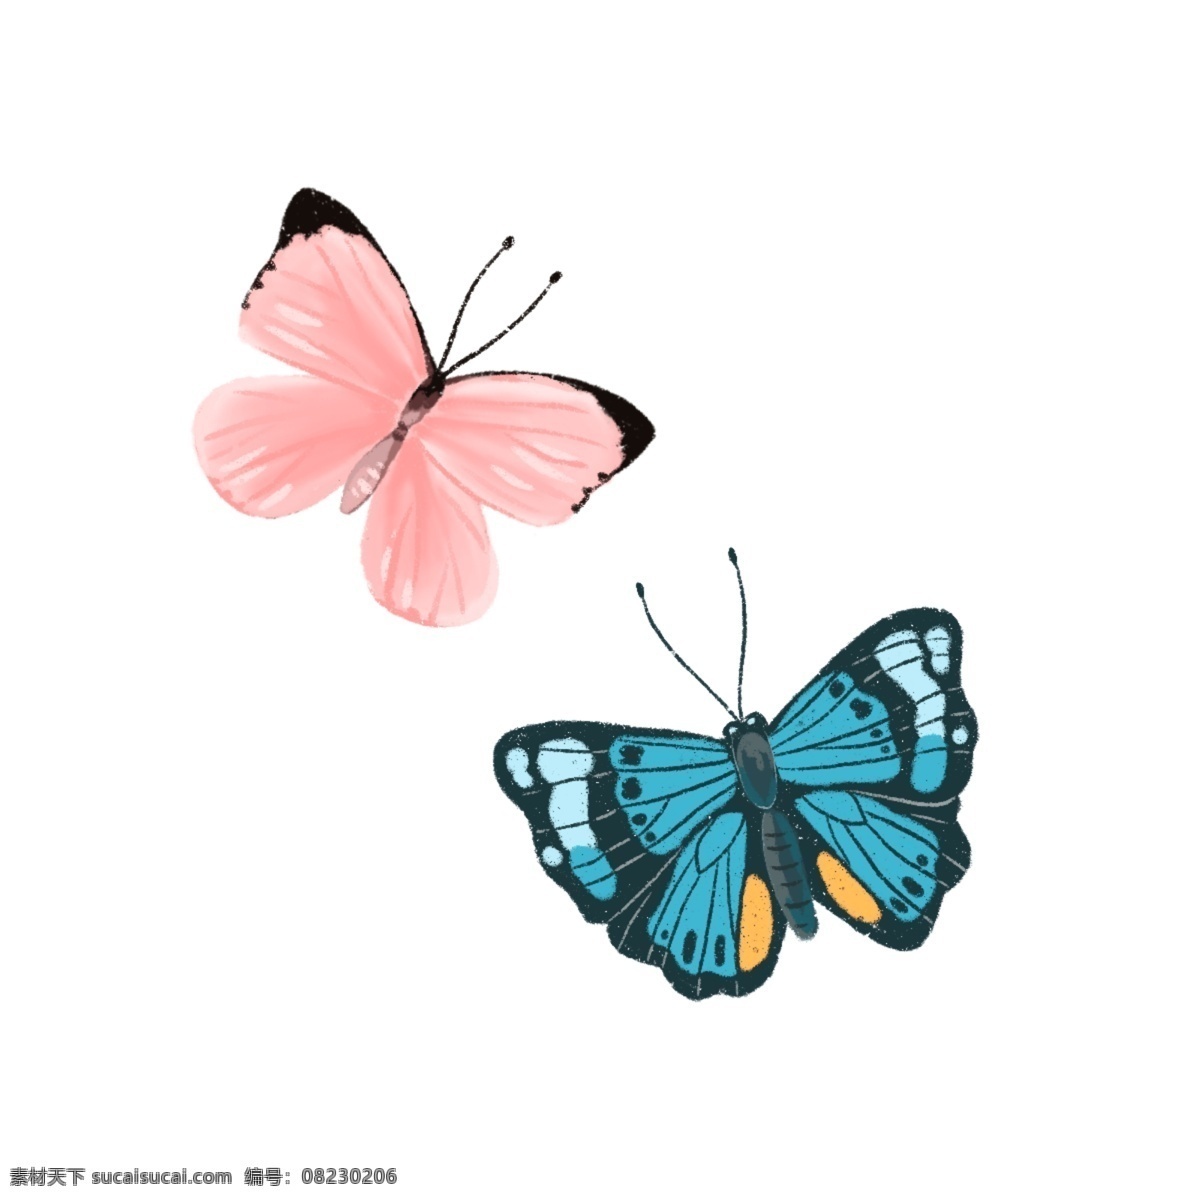 两 只 手绘 蝴蝶 彩蝶 粉色 蓝色 动物 飞行 卡通 触角 破茧化蝶 成双成对 翩翩起舞